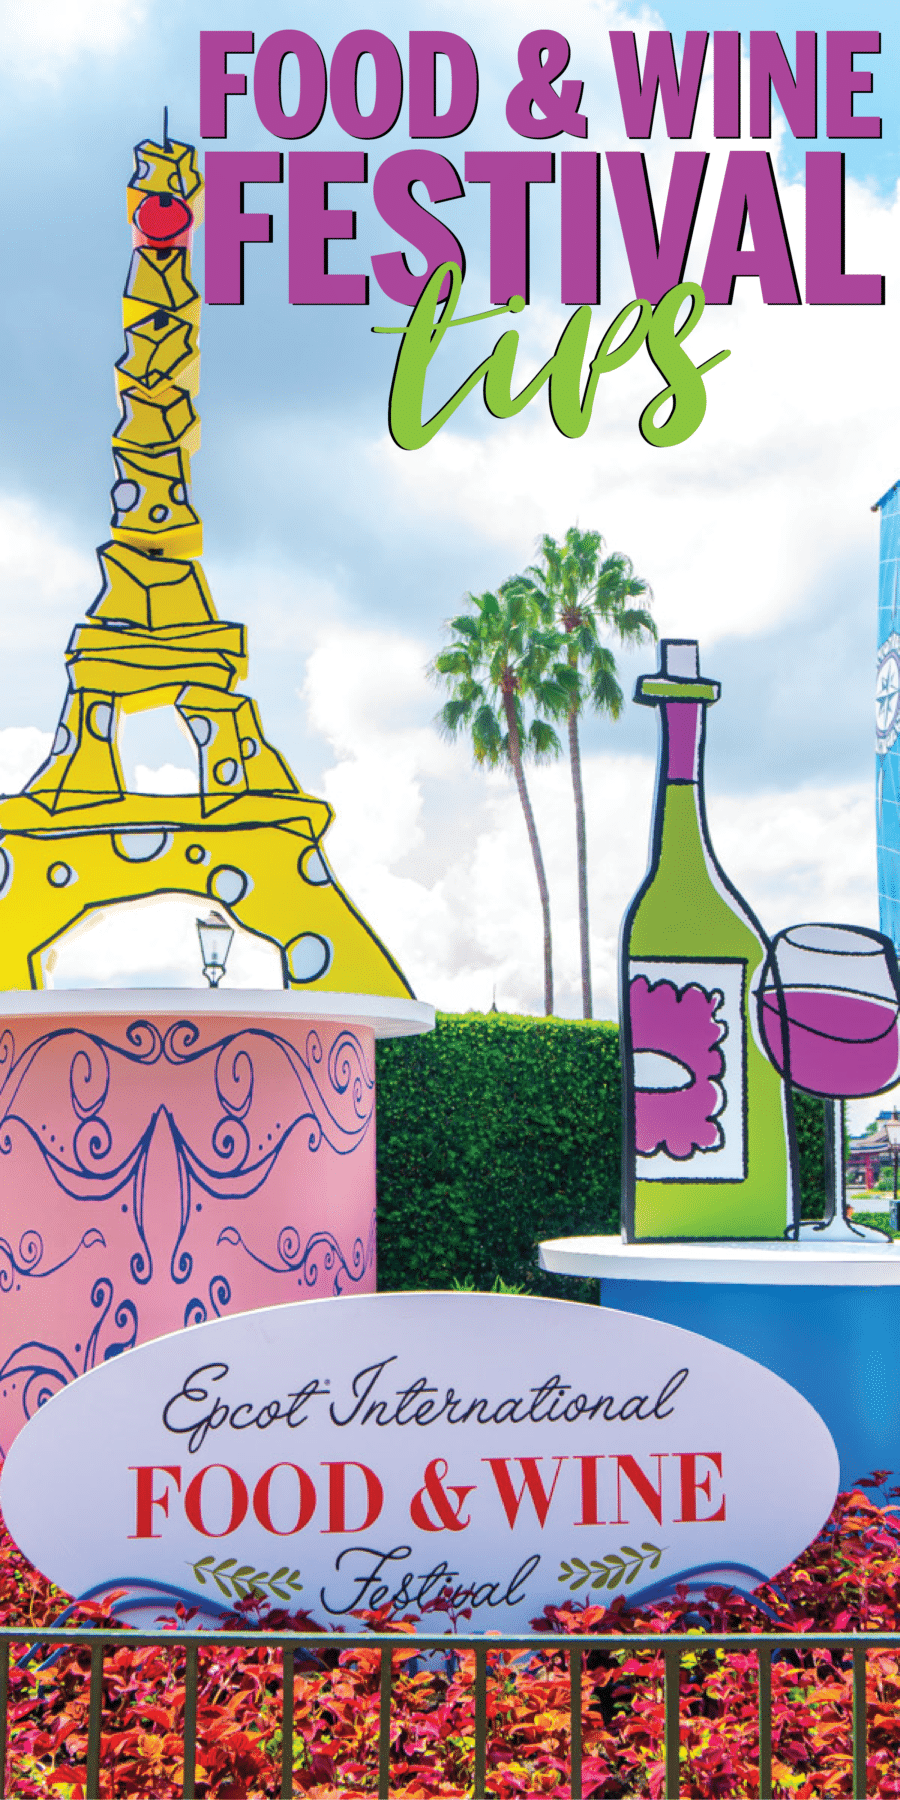 Le guide ultime du festival Epcot Food and Wine 2019! Menu complet, programmation de concerts, trucs et astuces, et plus encore! Tout ce dont vous avez besoin pour découvrir le festival de la gastronomie et du vin Disney cette année!